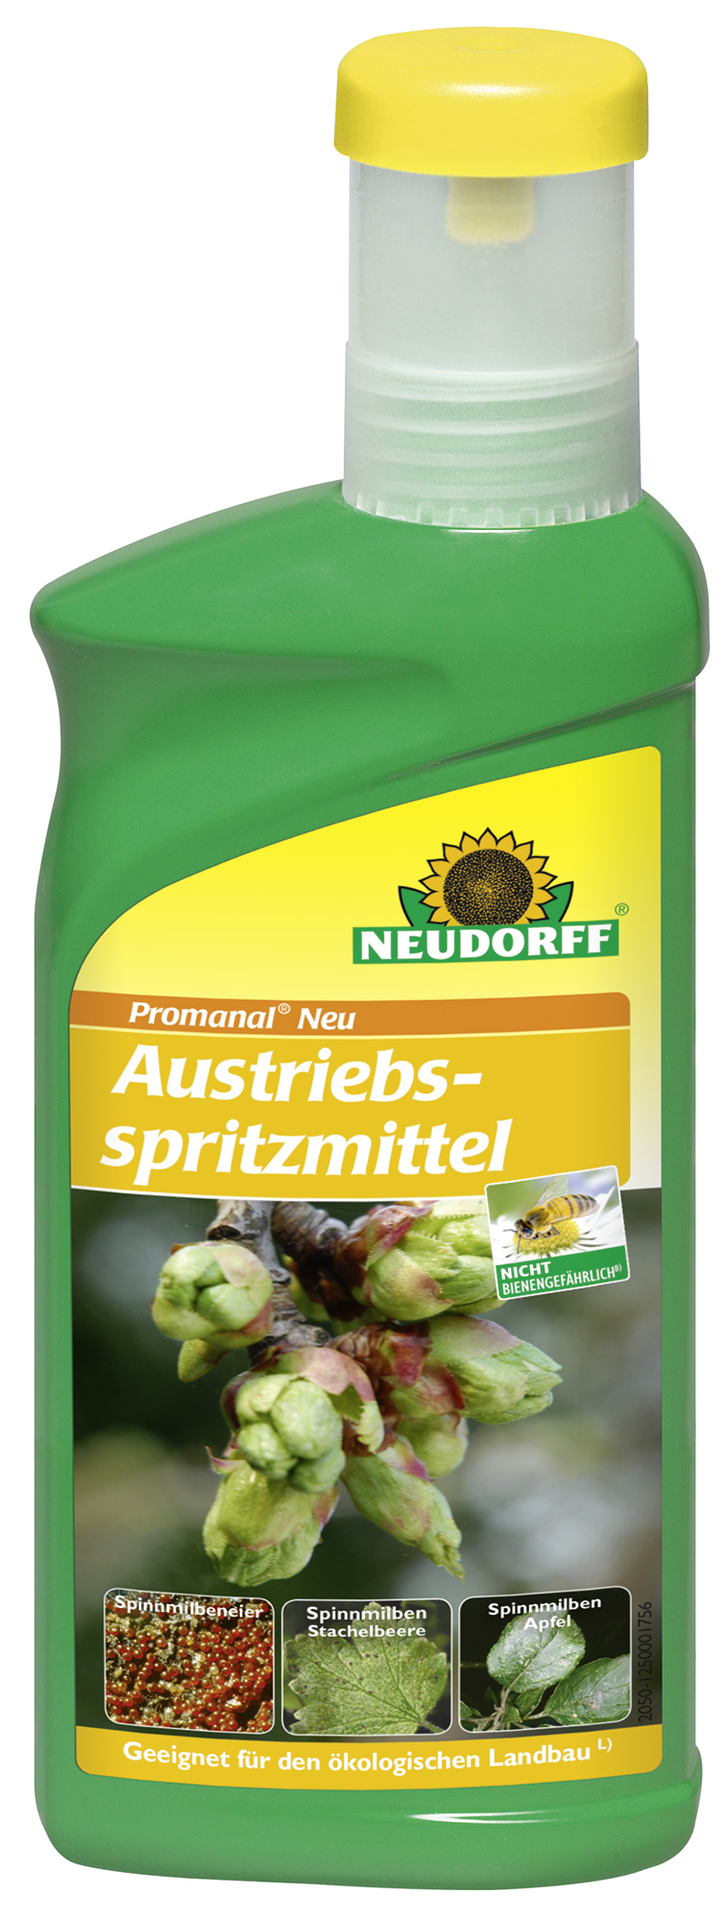 W. Neudorff GmbH KG Promanal Neu Austriebsspritzmittel